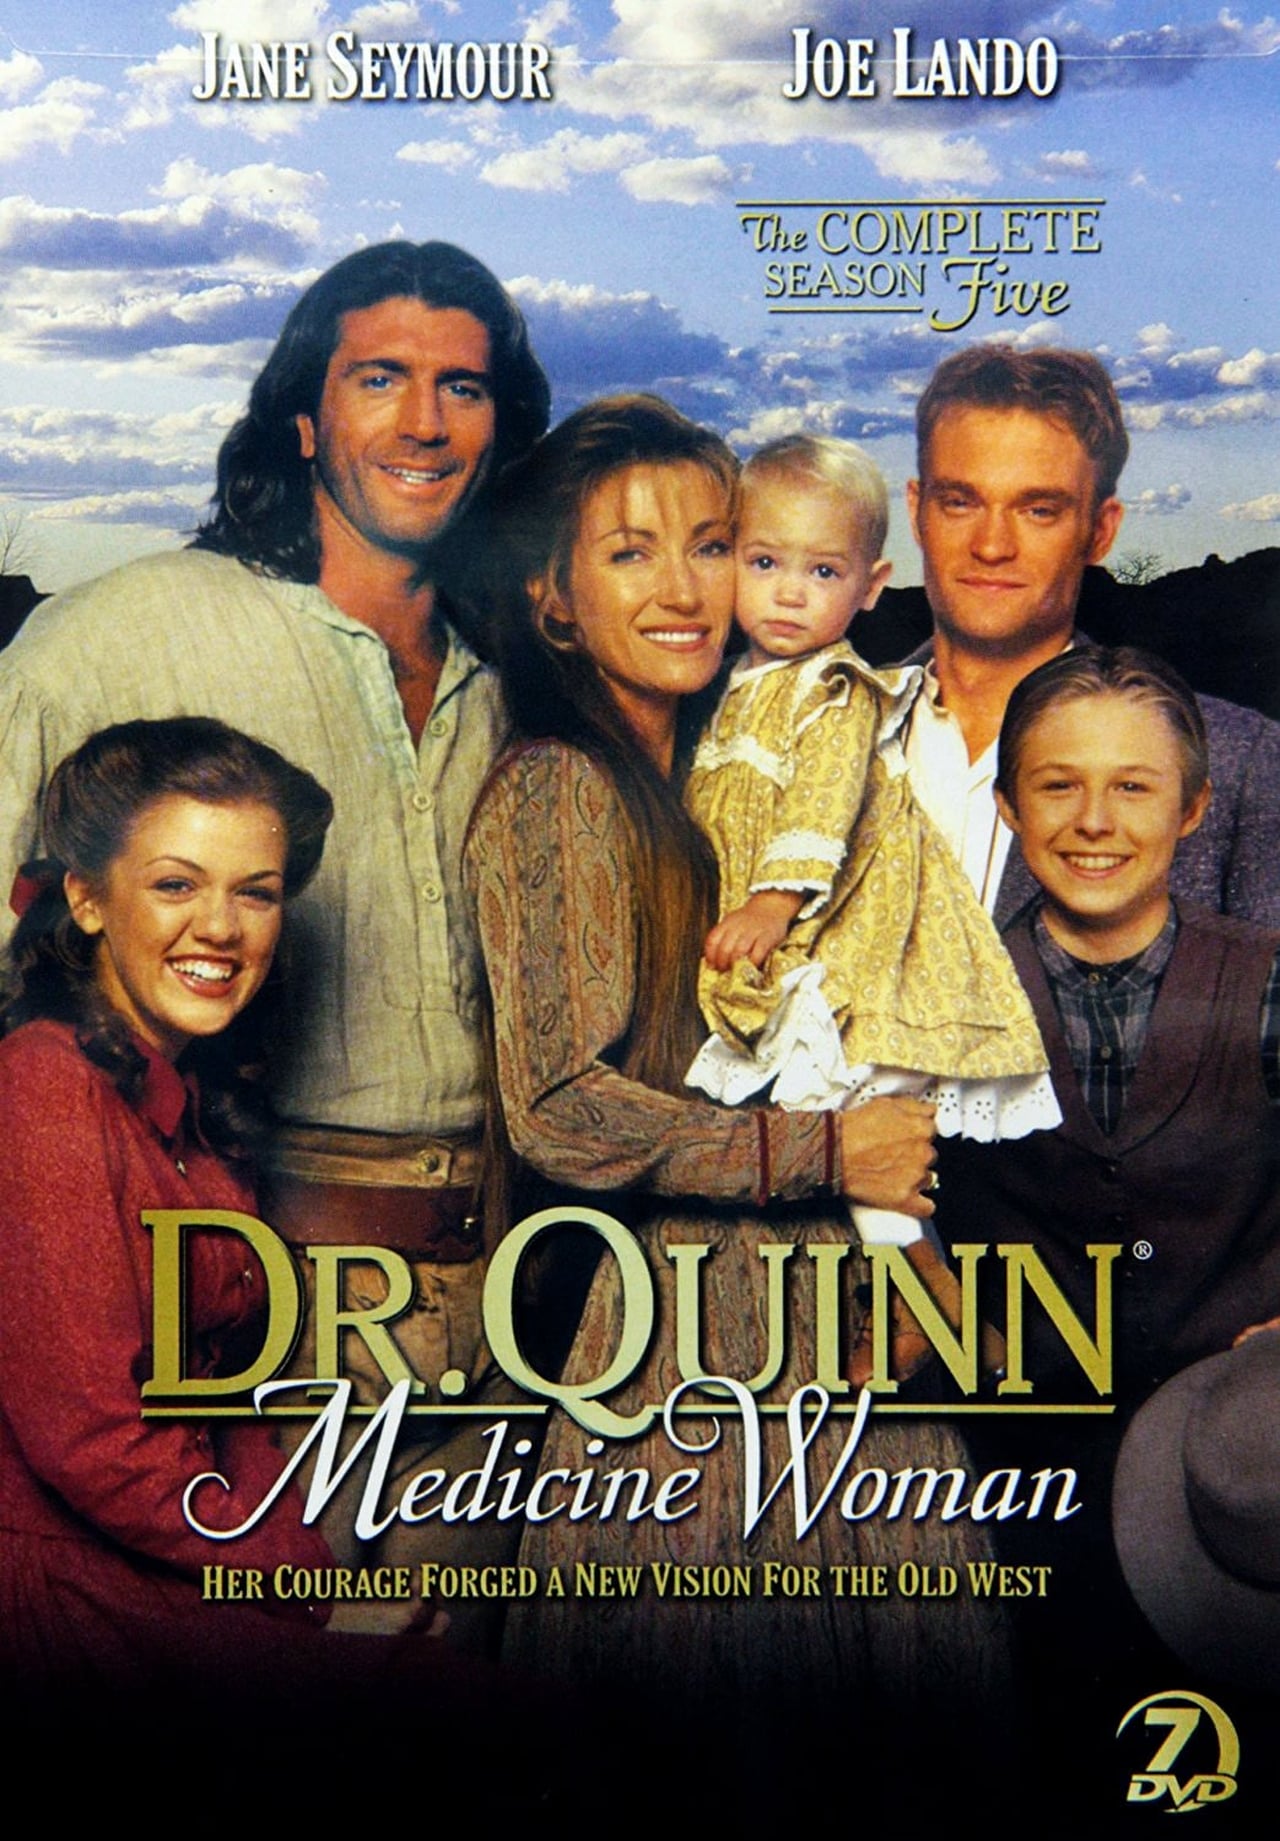 Dr. Quinn, Medicine Woman (1996)